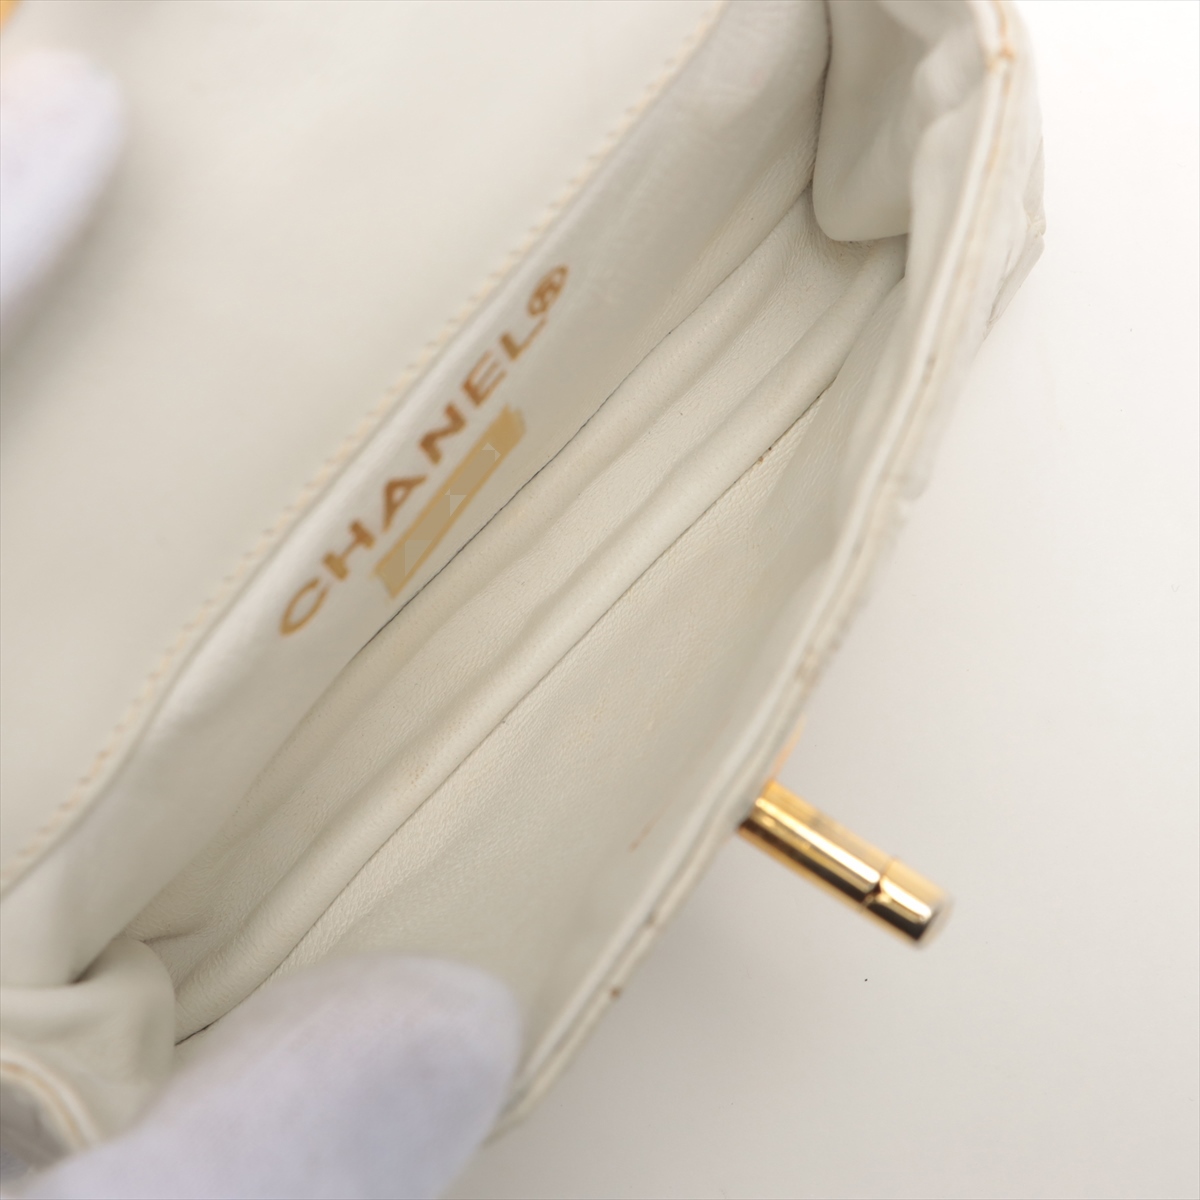  Chanel здесь Mark черный ko поясная сумка белое золото металлические принадлежности 0 номер шт. 